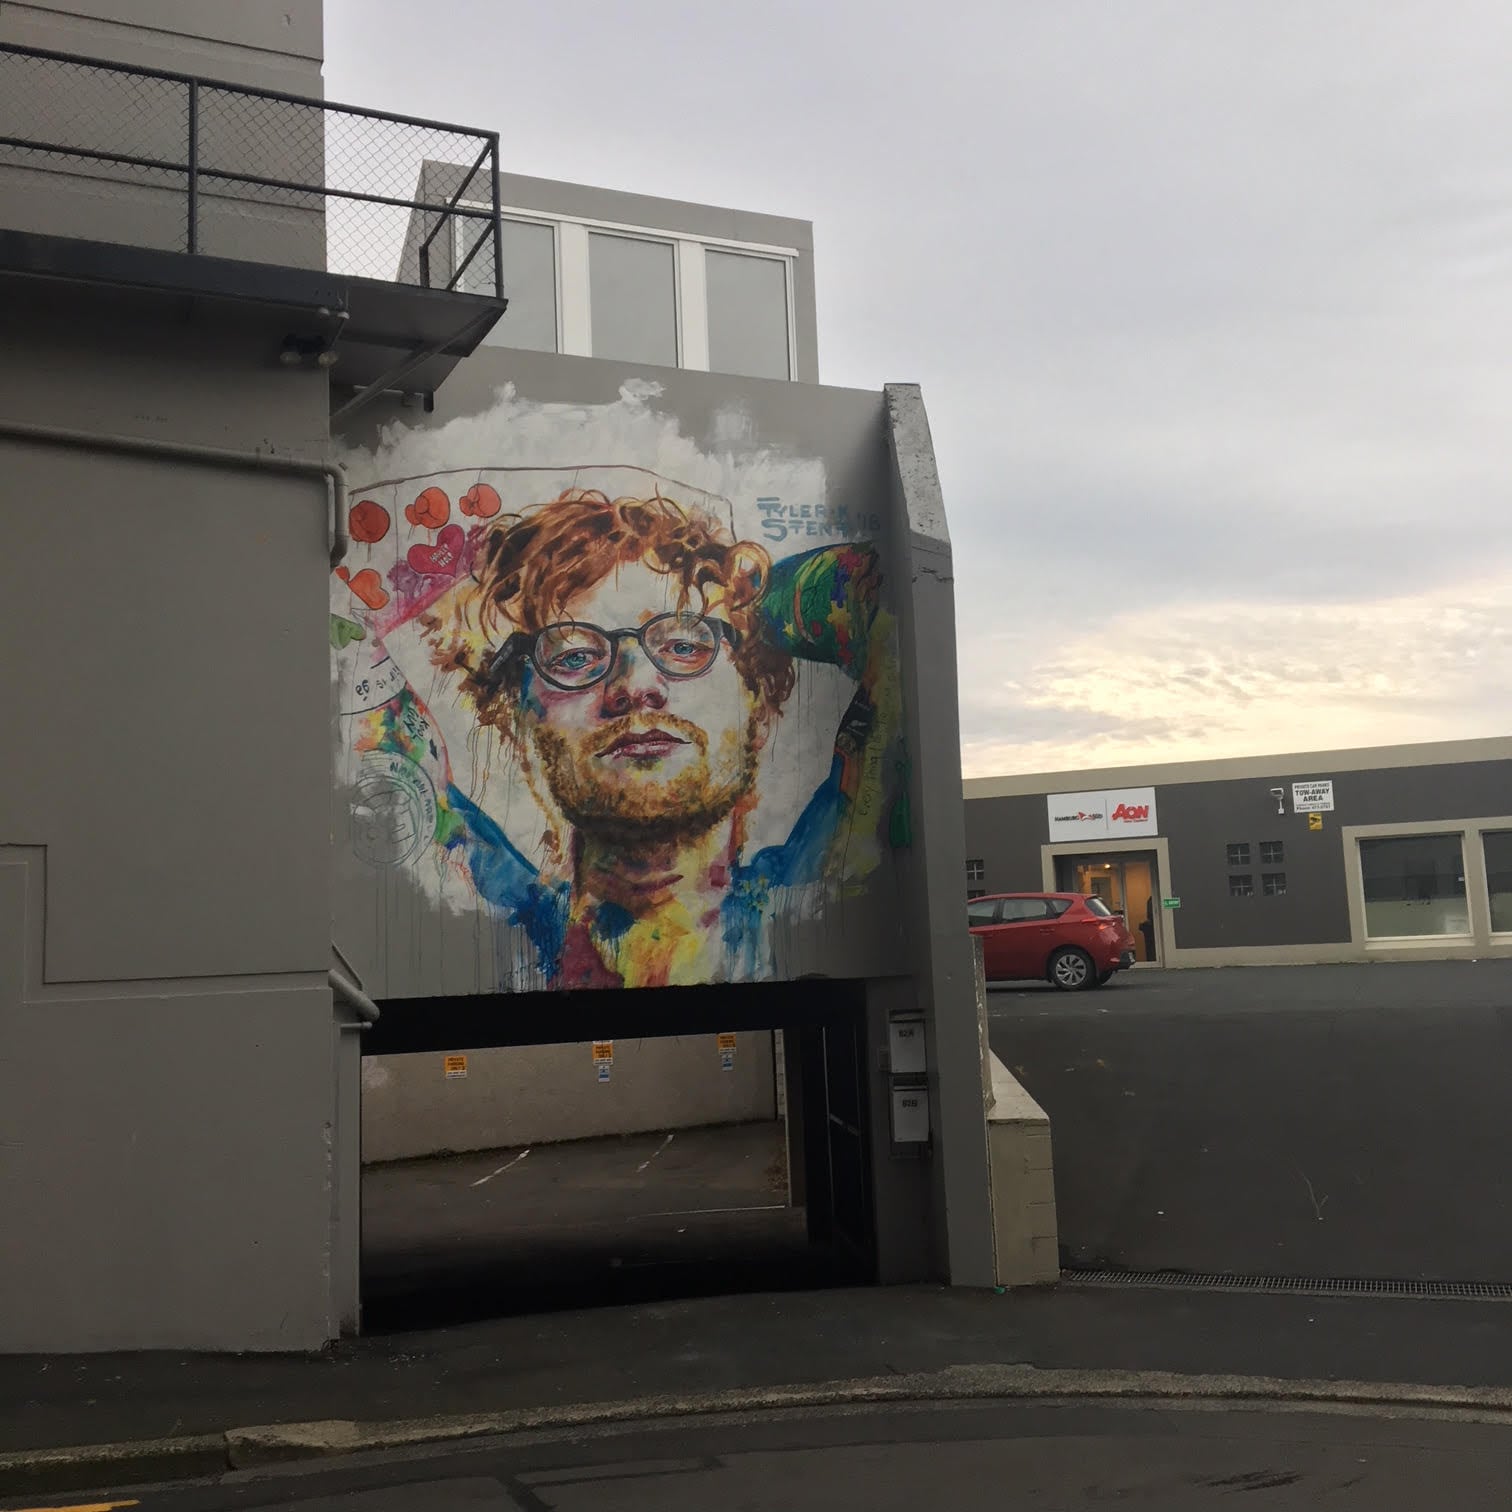 Image 02: Ed Sheeran mural, Dunedin. Photo: Rosemary Overell.